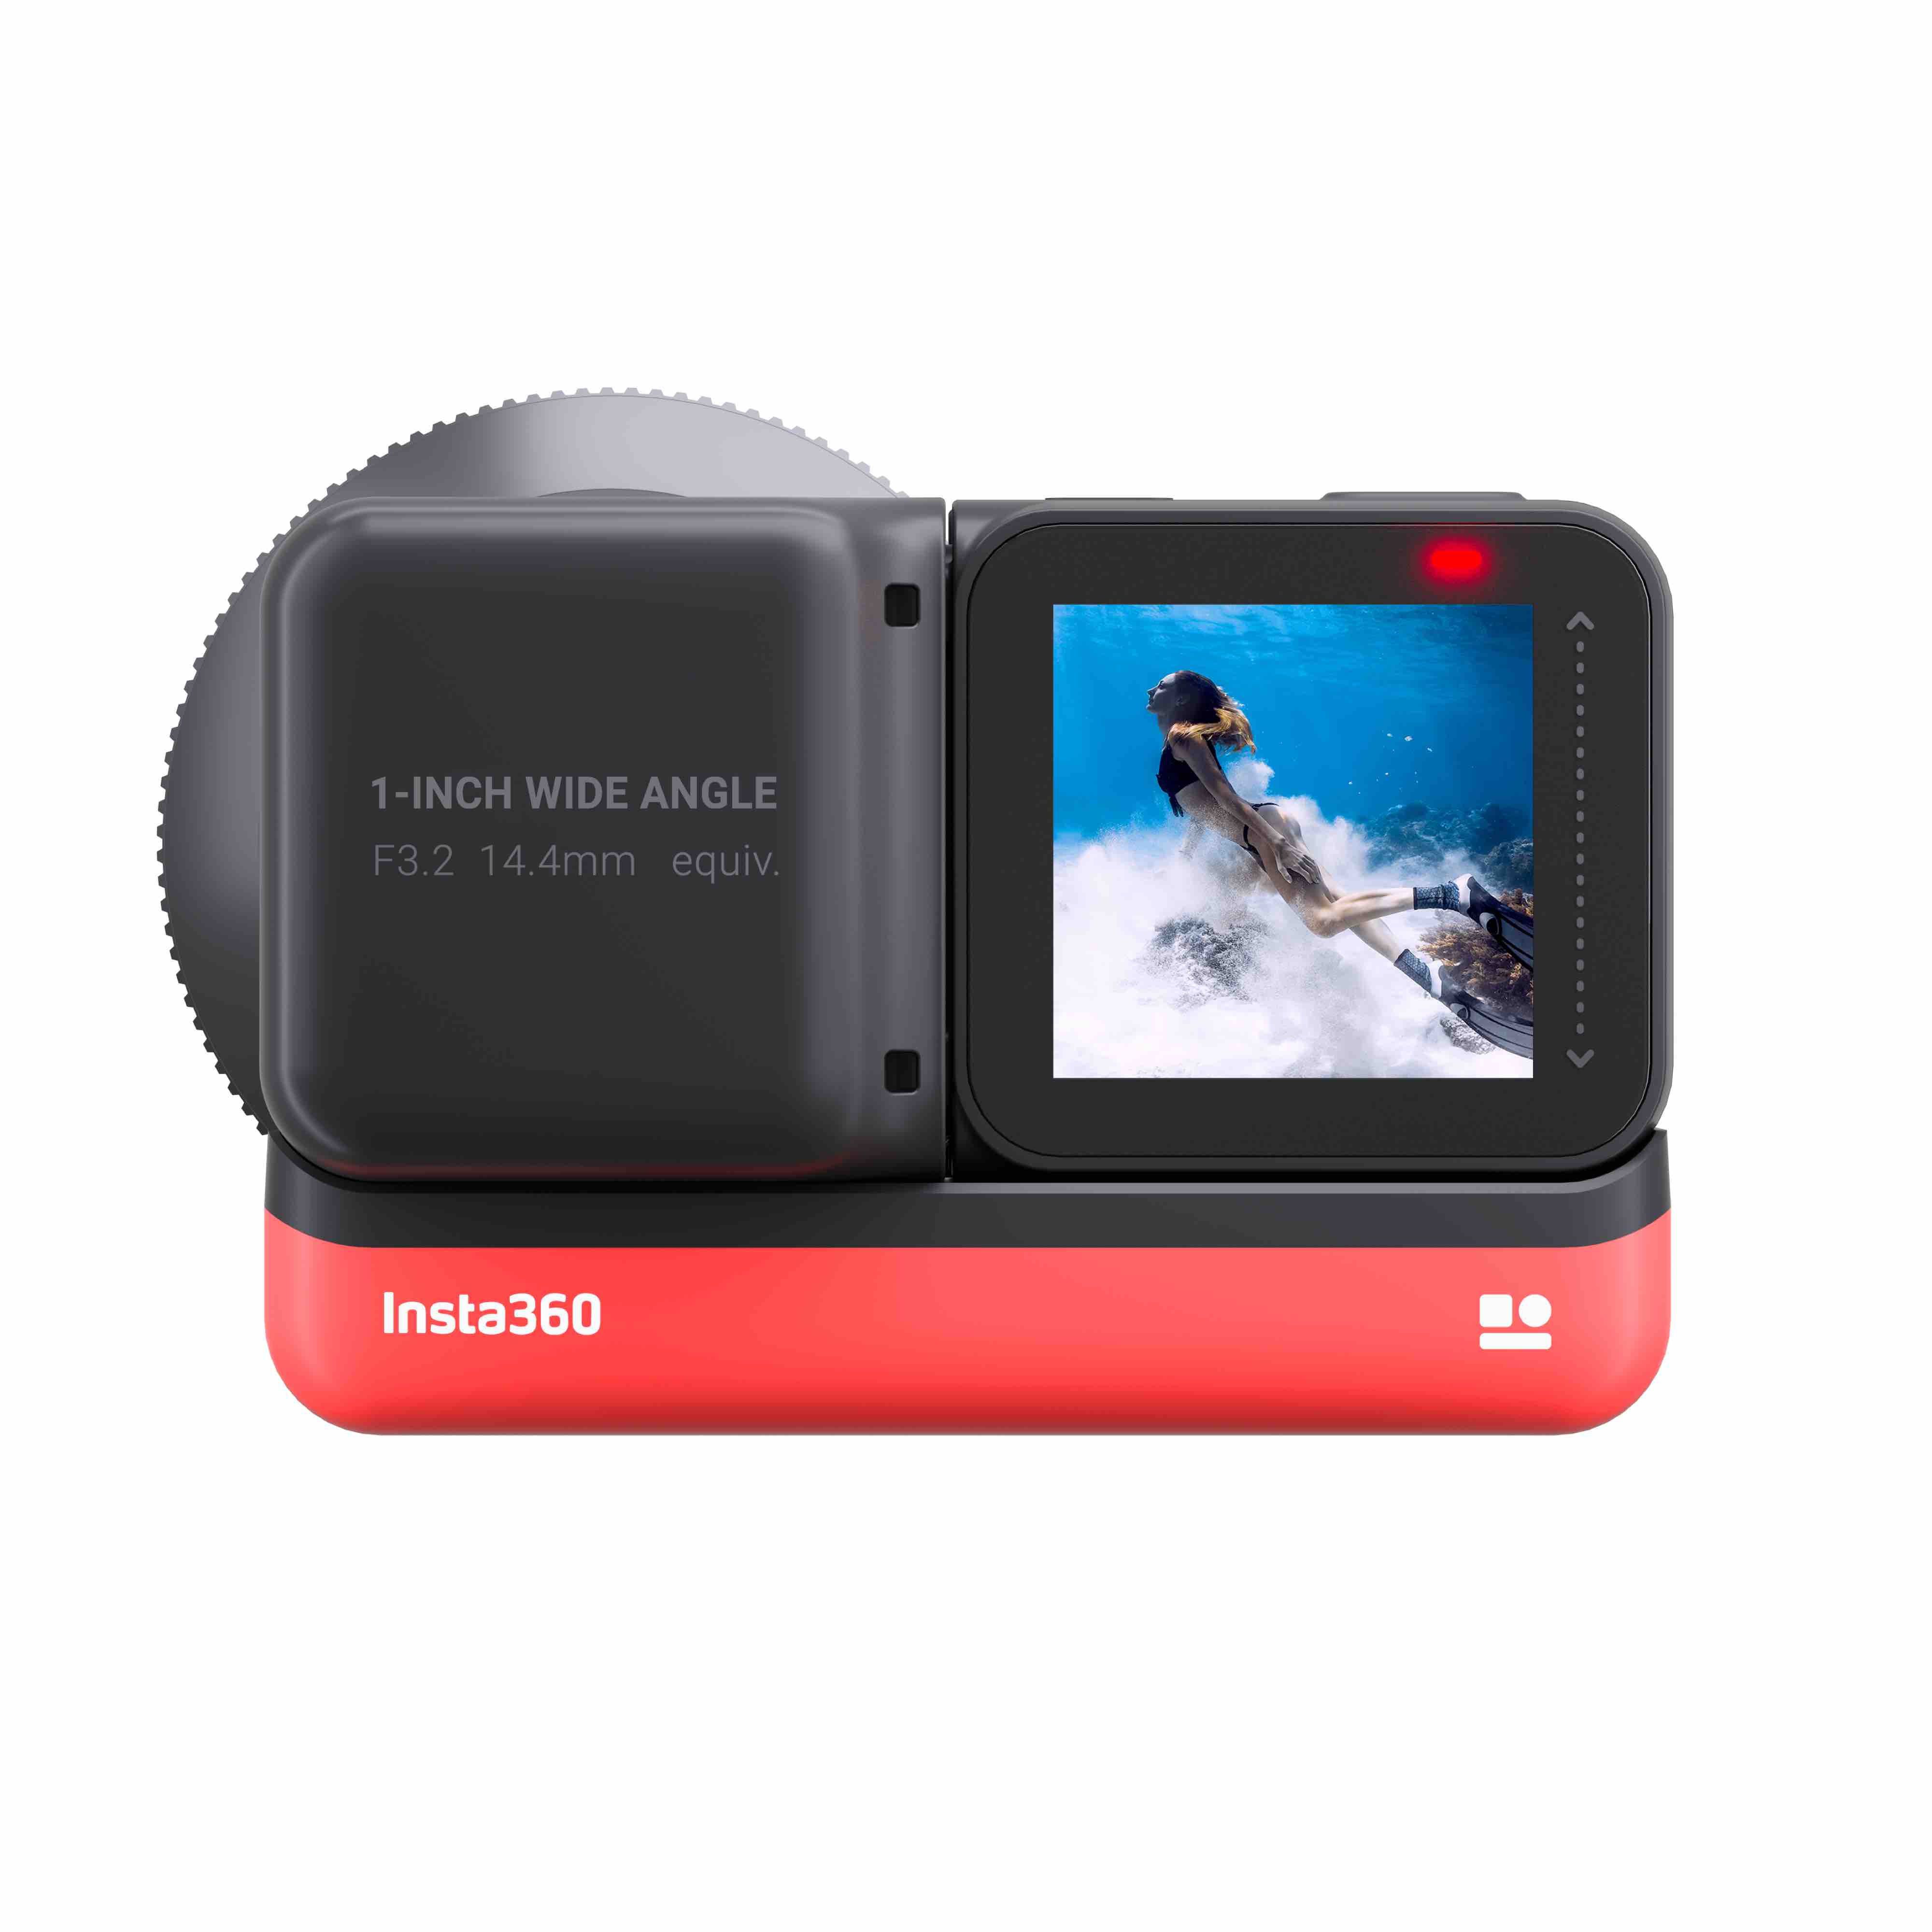 レンズ交換可能なアクションカメラ「Insta360 ONE R」新登場。ライカと共同開発で高画質を実現 | ニュース ×スポーツ『MELOS』